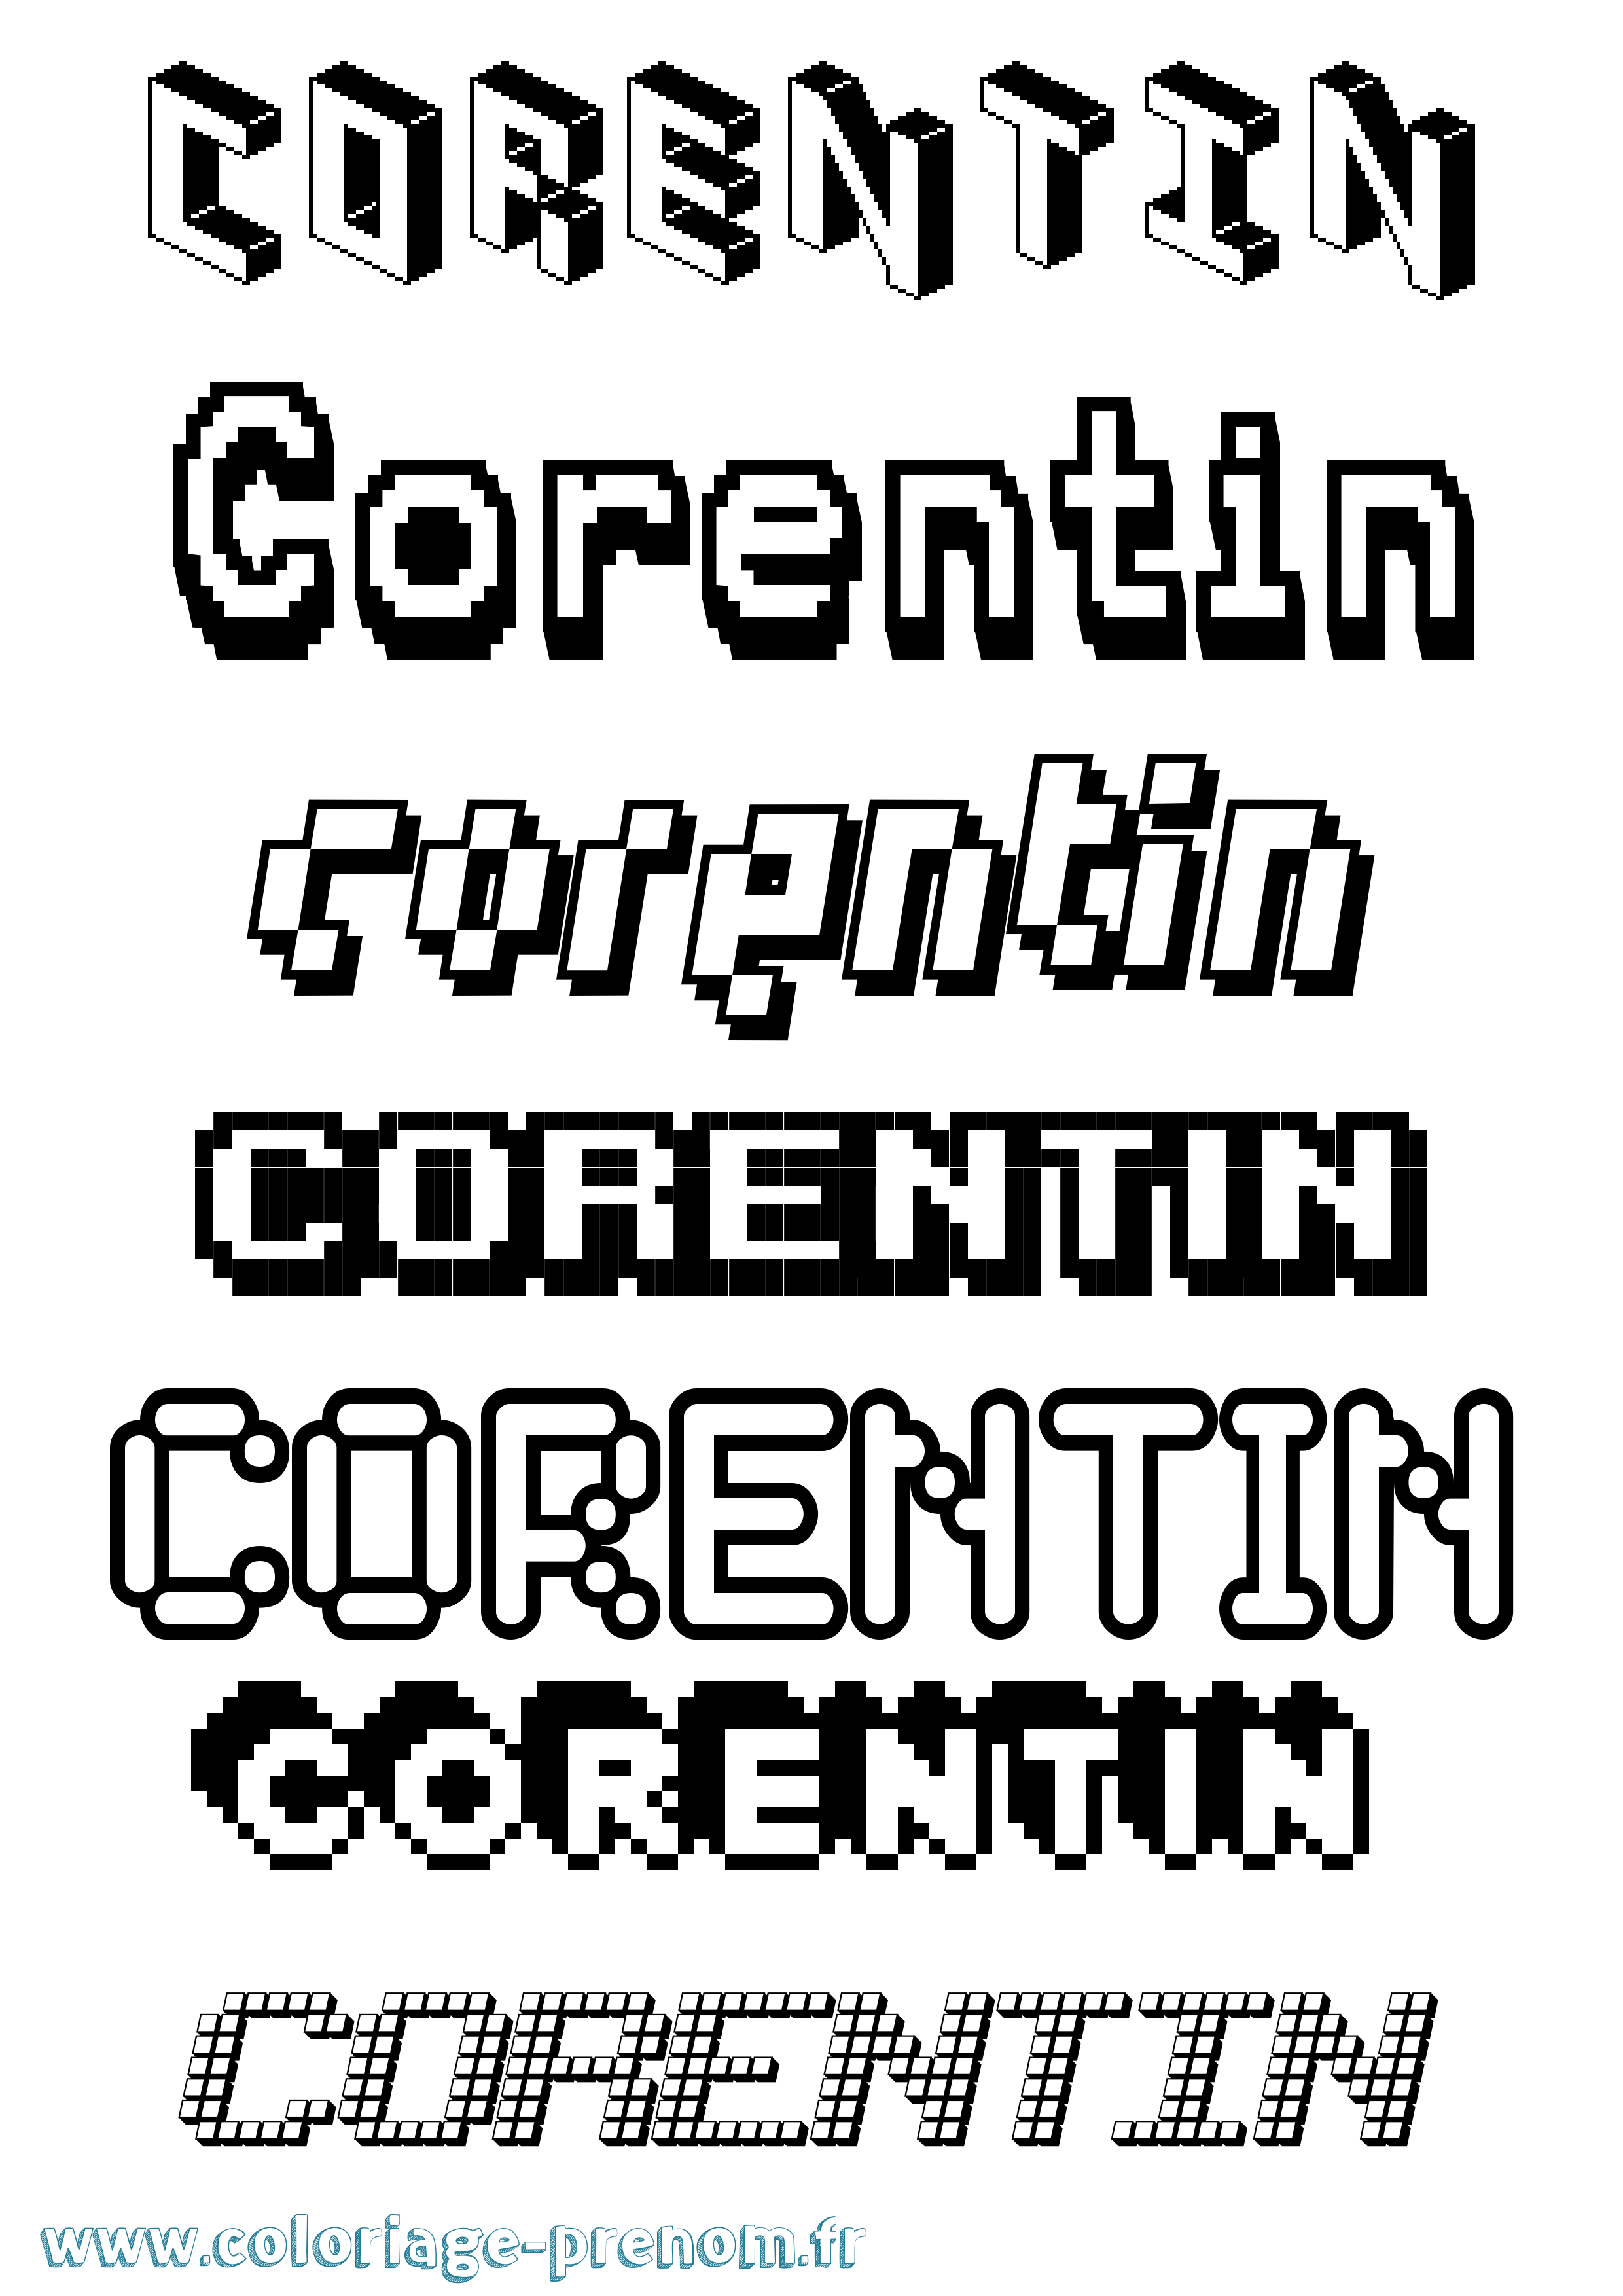 Coloriage prénom Corentin